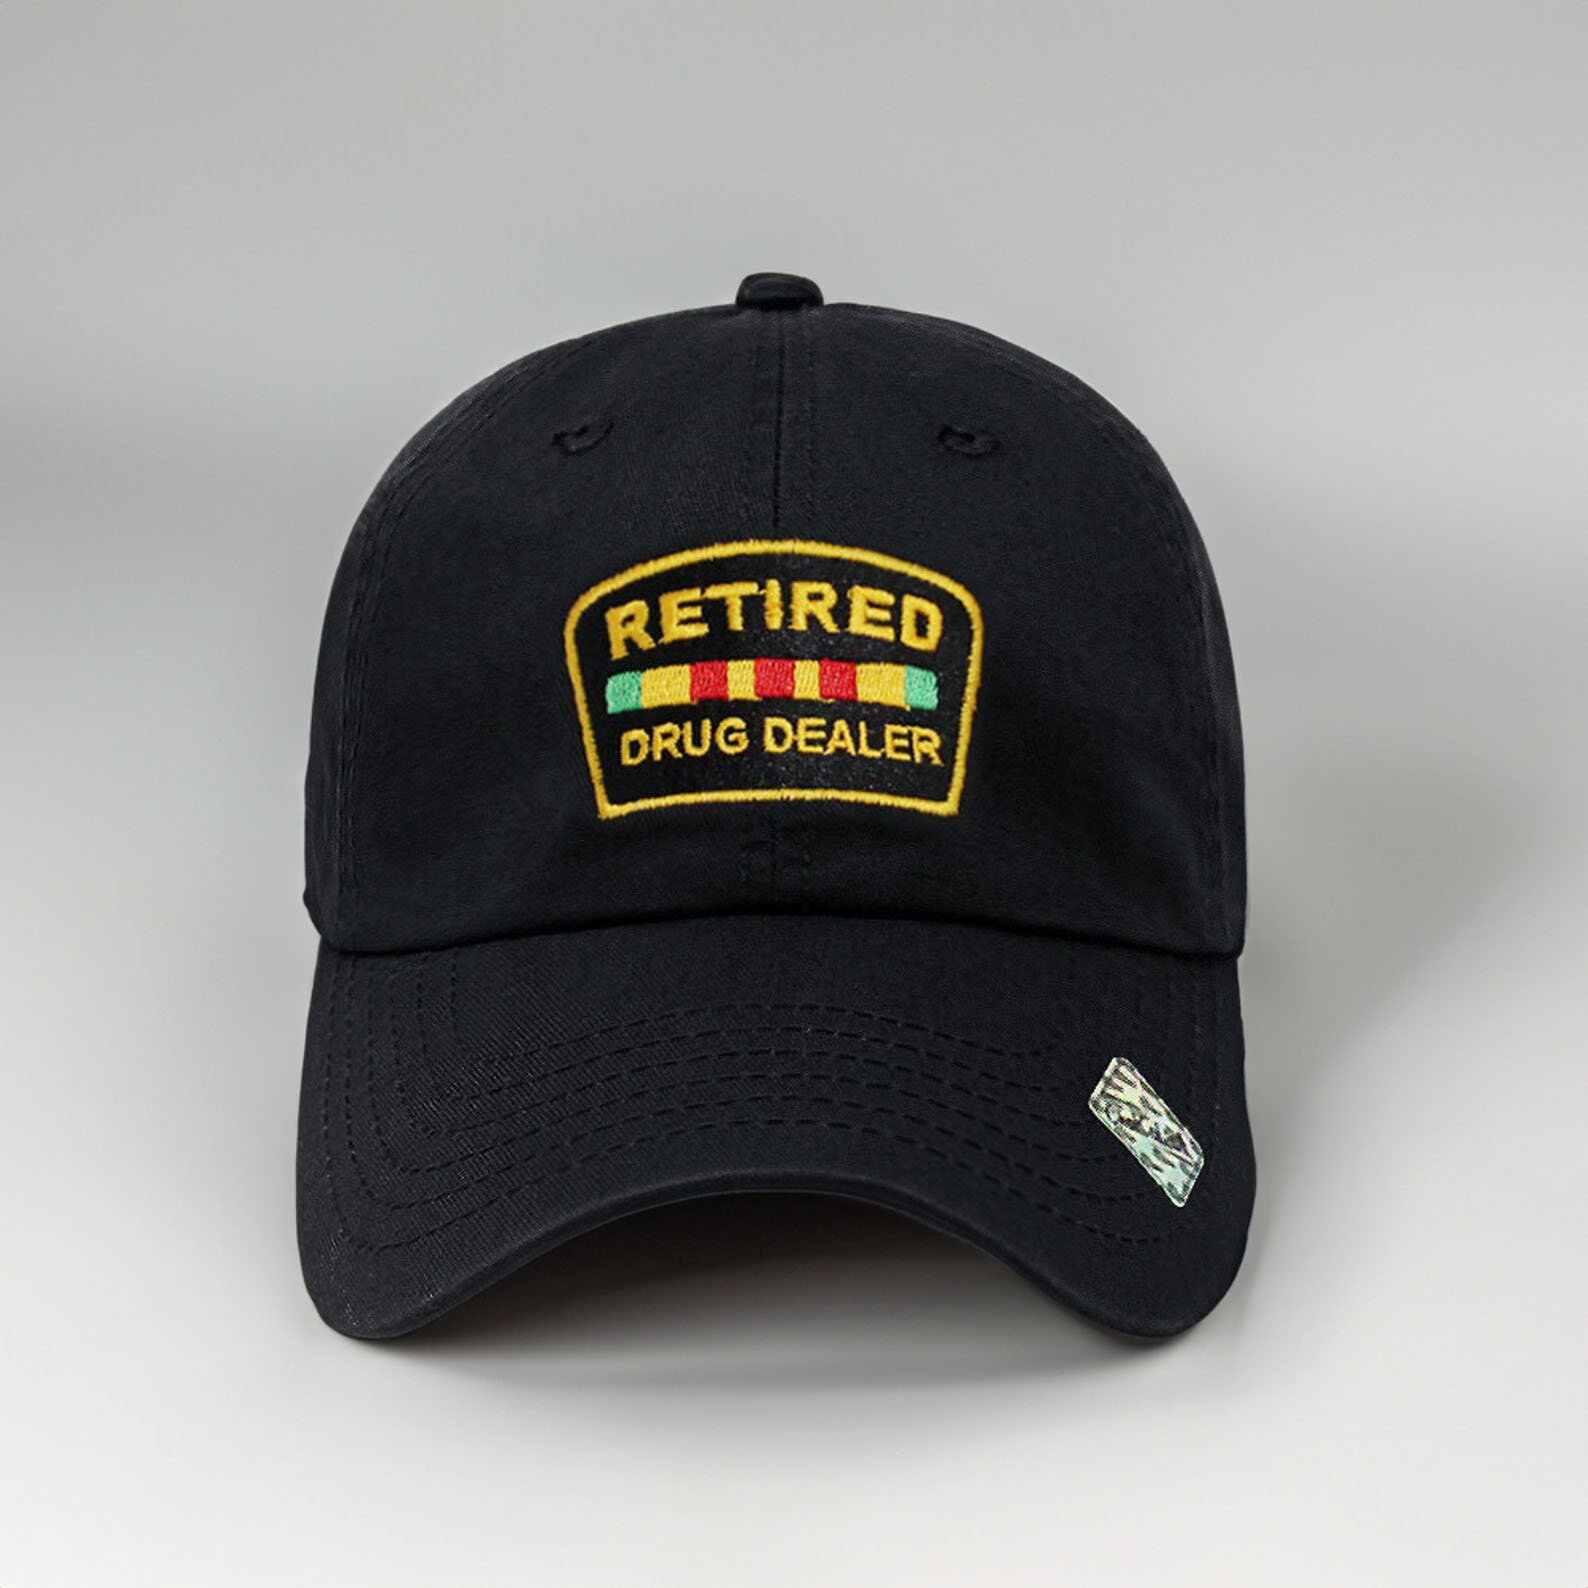 Retired Drug Dealer Chico Design Embroidered Cap